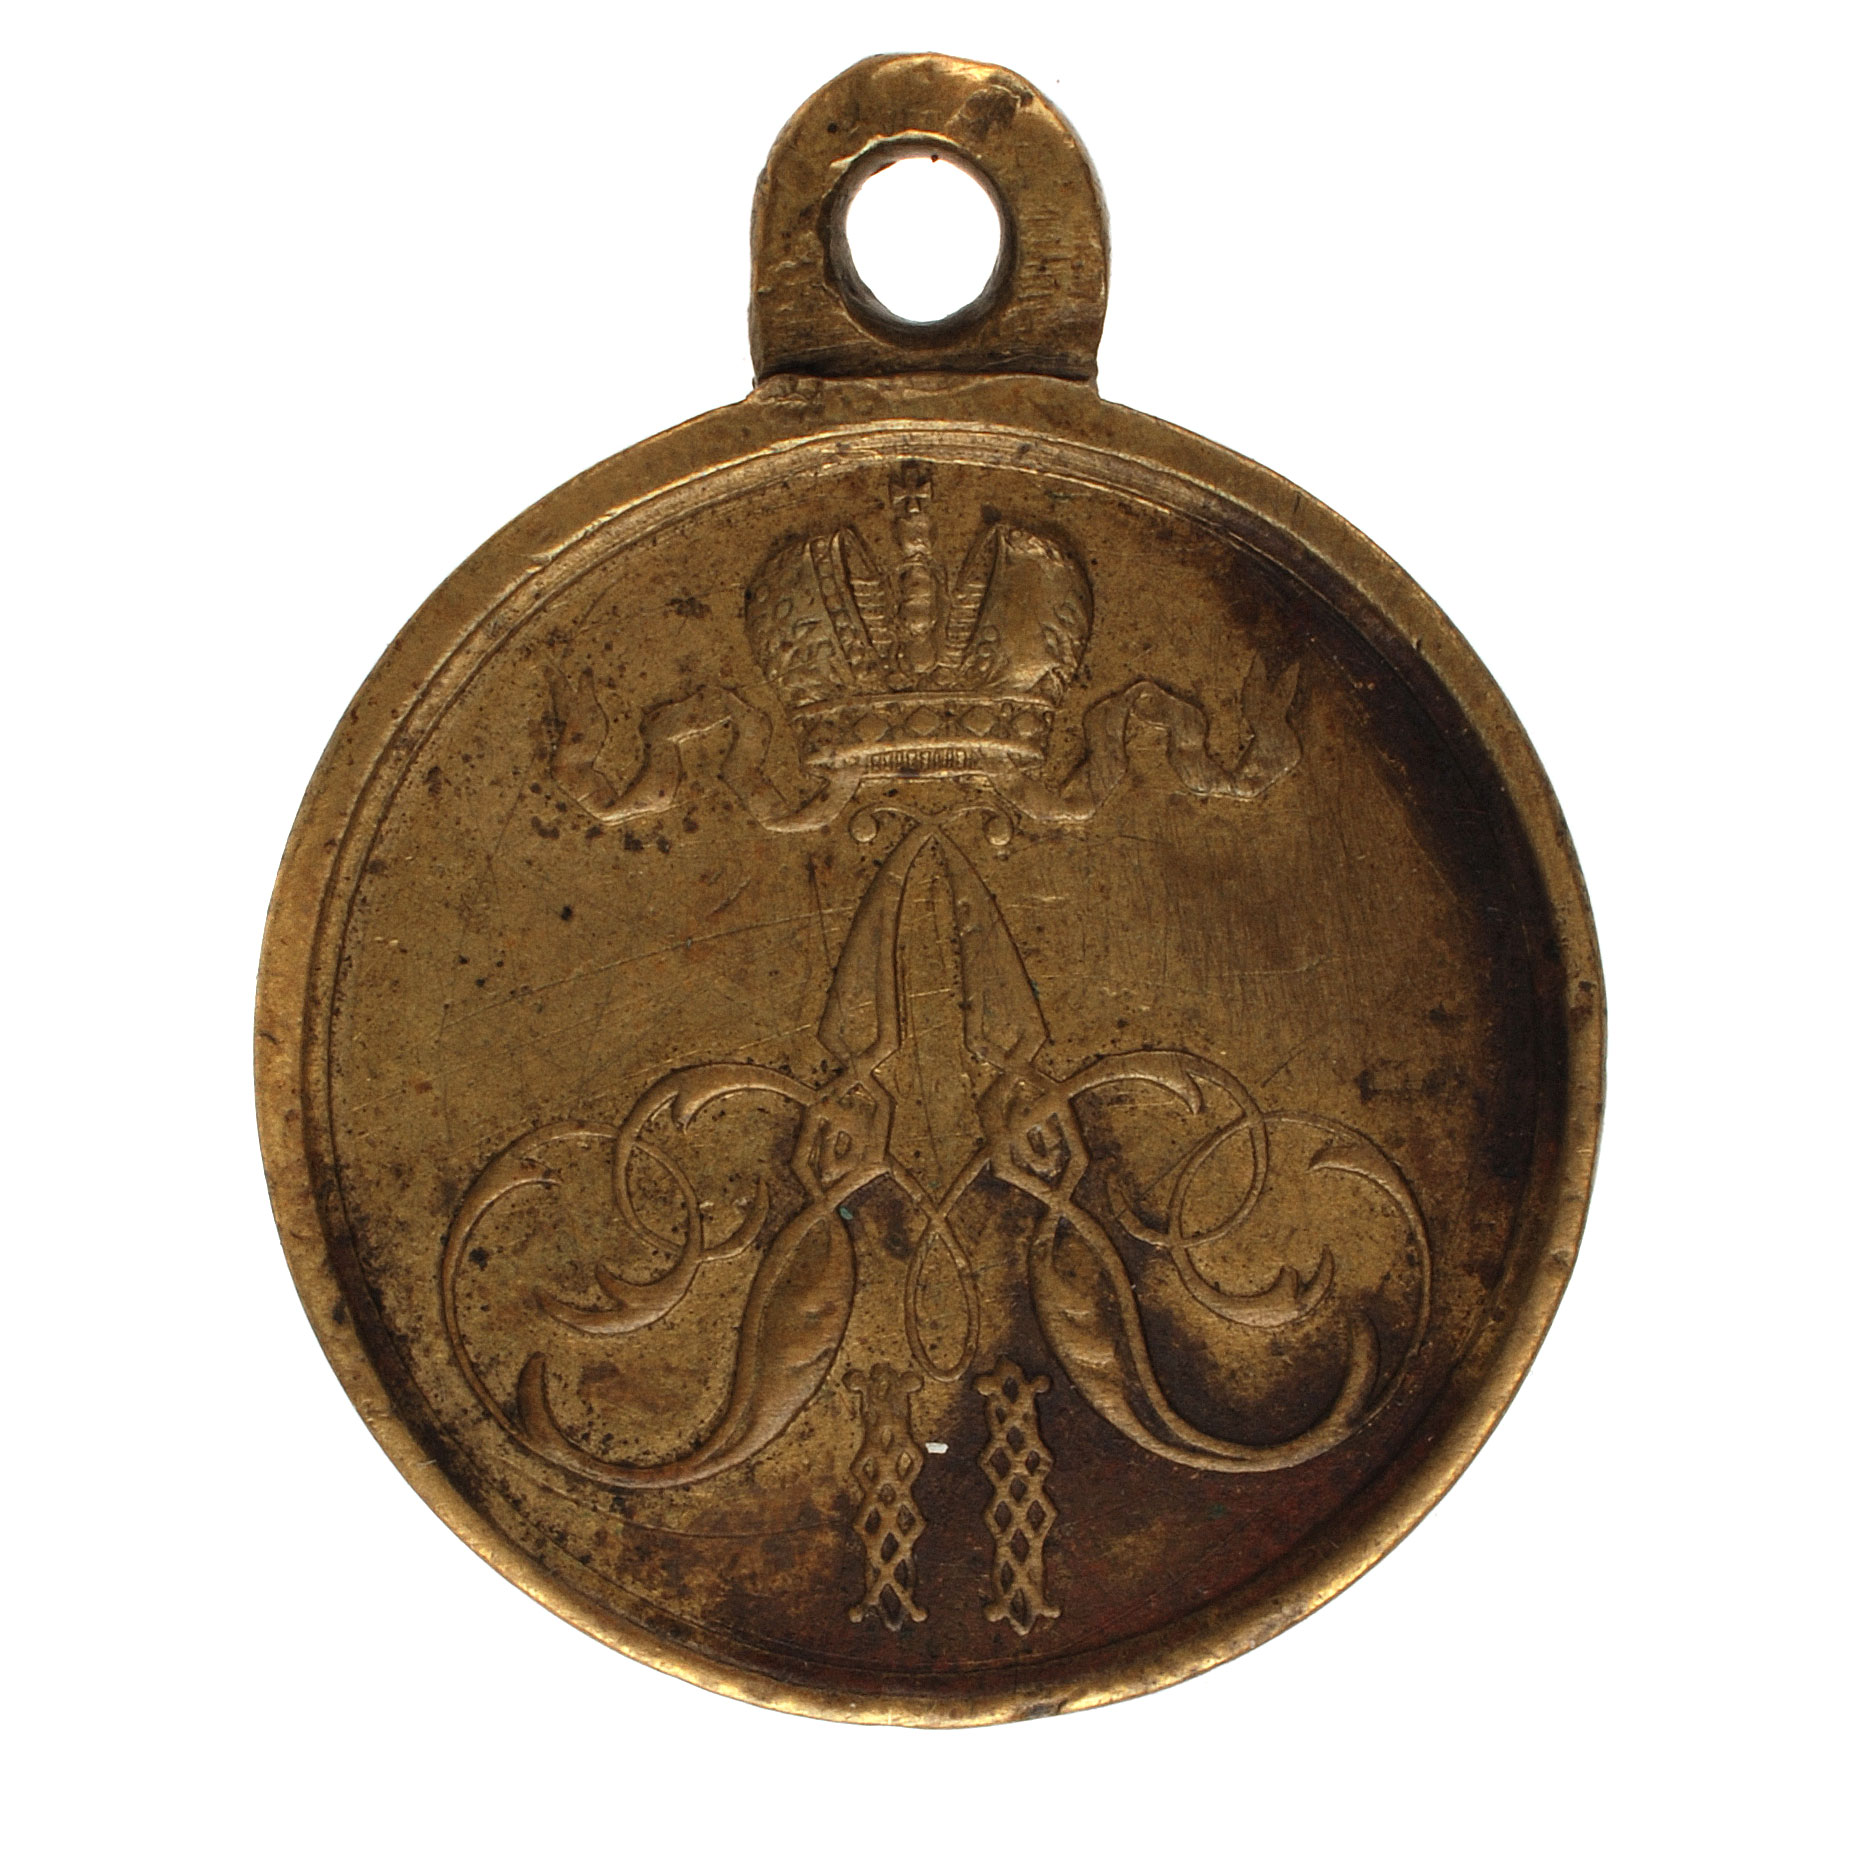 Медаль "За покорение ханства Коканского 1875 - 1876 гг".